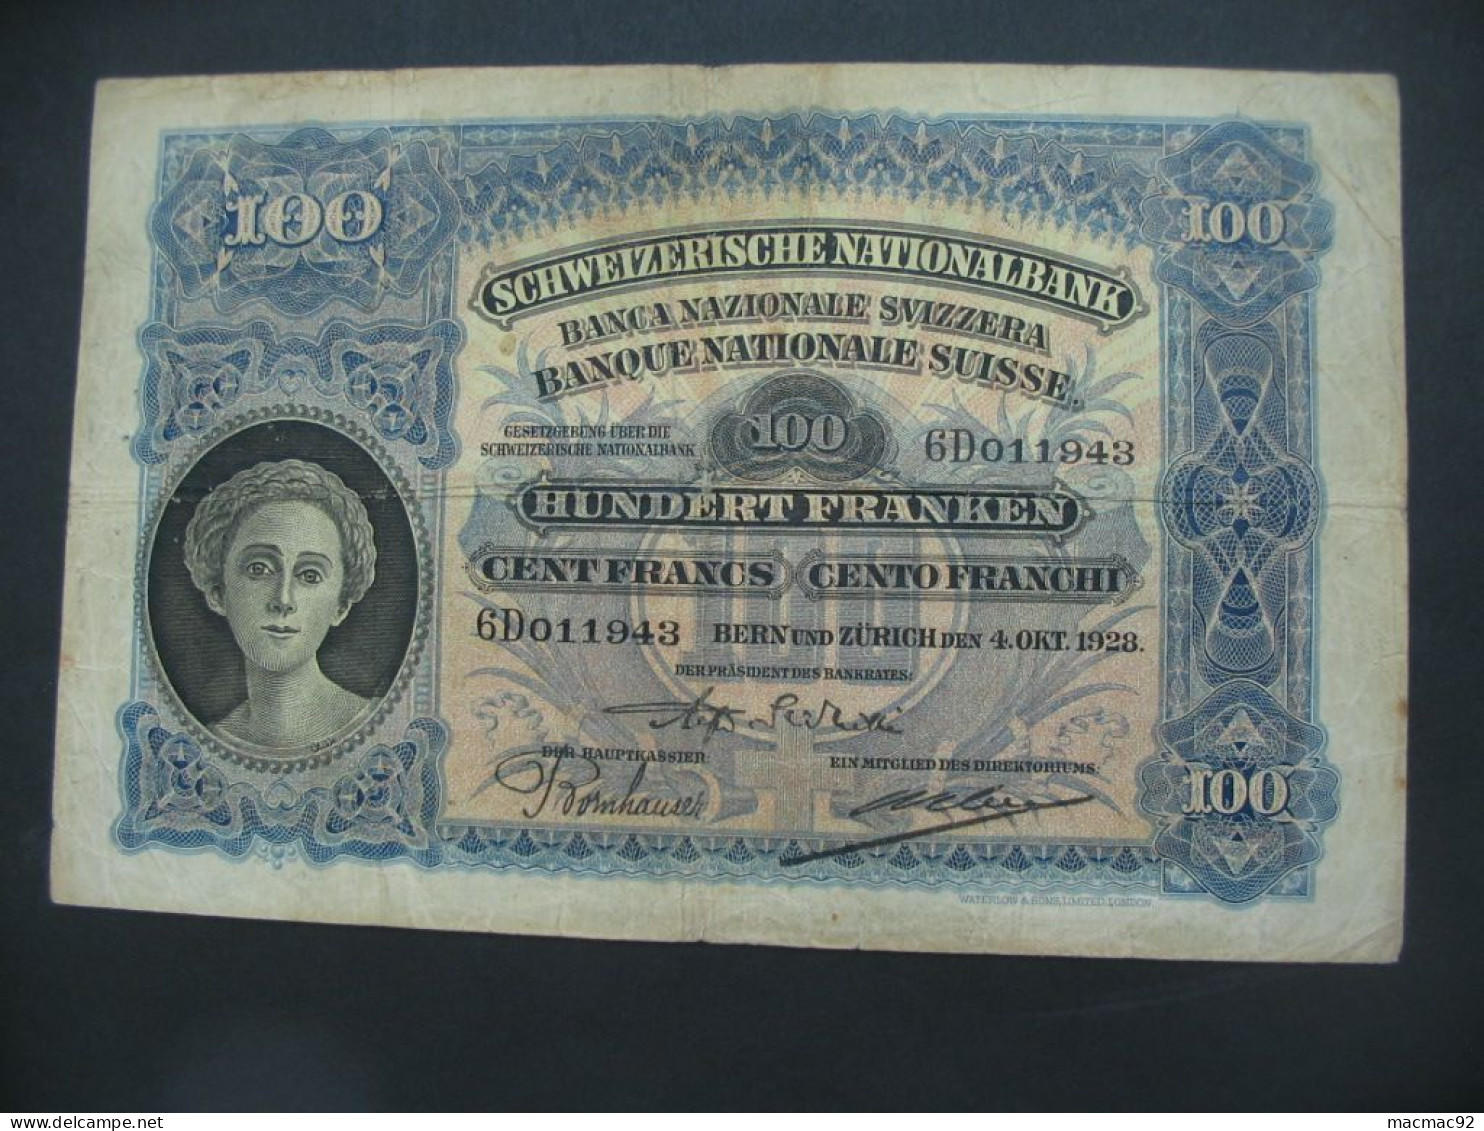 RARE Billet Suisse - 100 Francs 1928 Schweizerische Nationalbank **** EN ACHAT IMMEDIAT **** - Switzerland